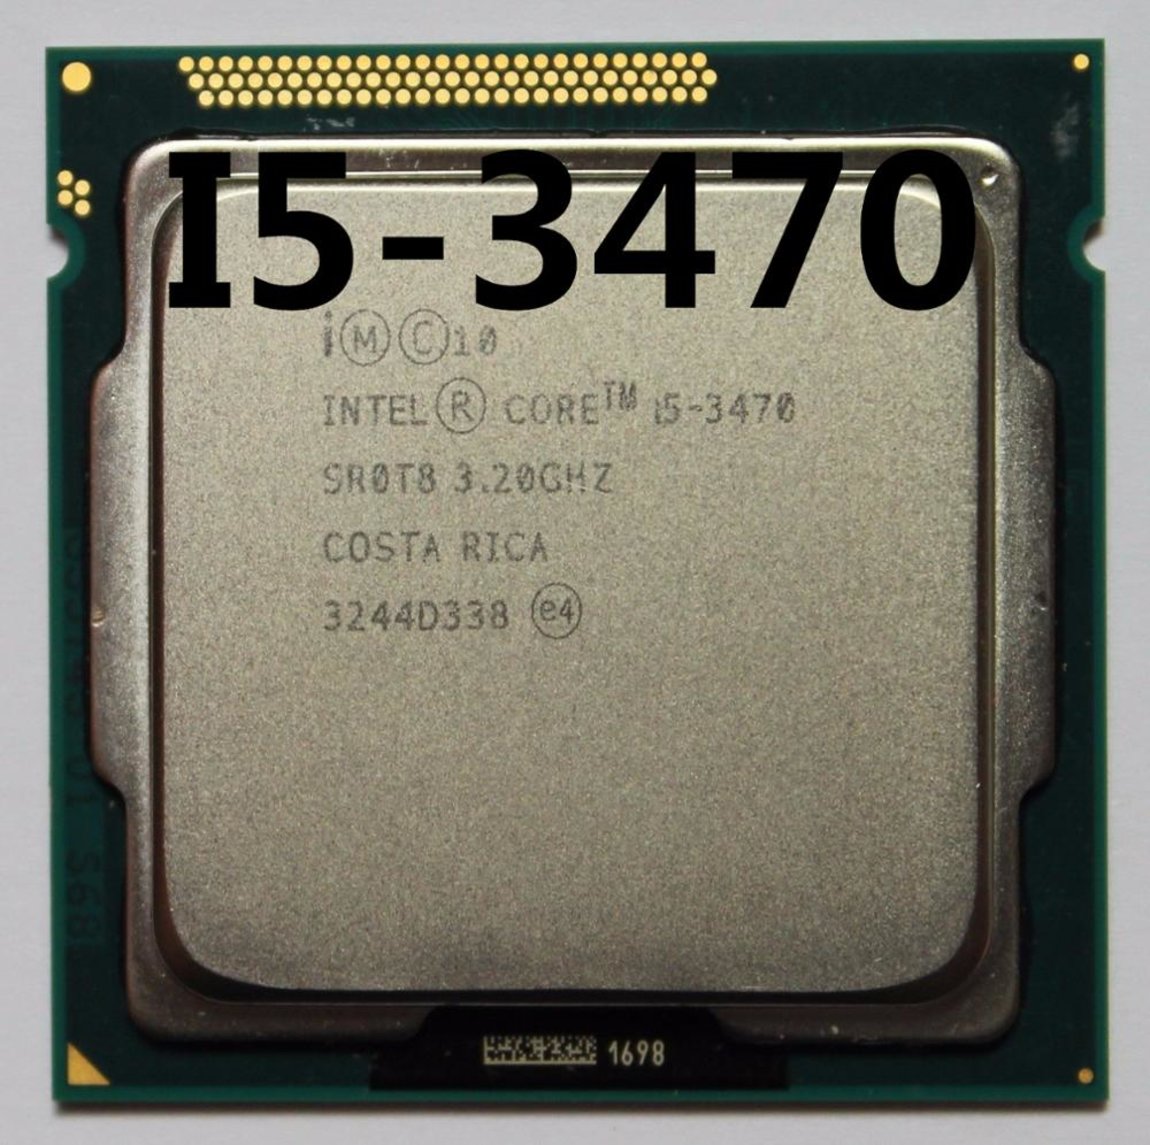 Core i5 3.3 ghz. Intel Core i5 3470 3.2GHZ. Процессор Intel Core i5-3470 3.2GHZ lga1155. Процессор Intel Core i5 3470 LGA 1155. Процессор: Intel Core i5 3470 @ 3.2 ГГЦ (четырехъядерный).